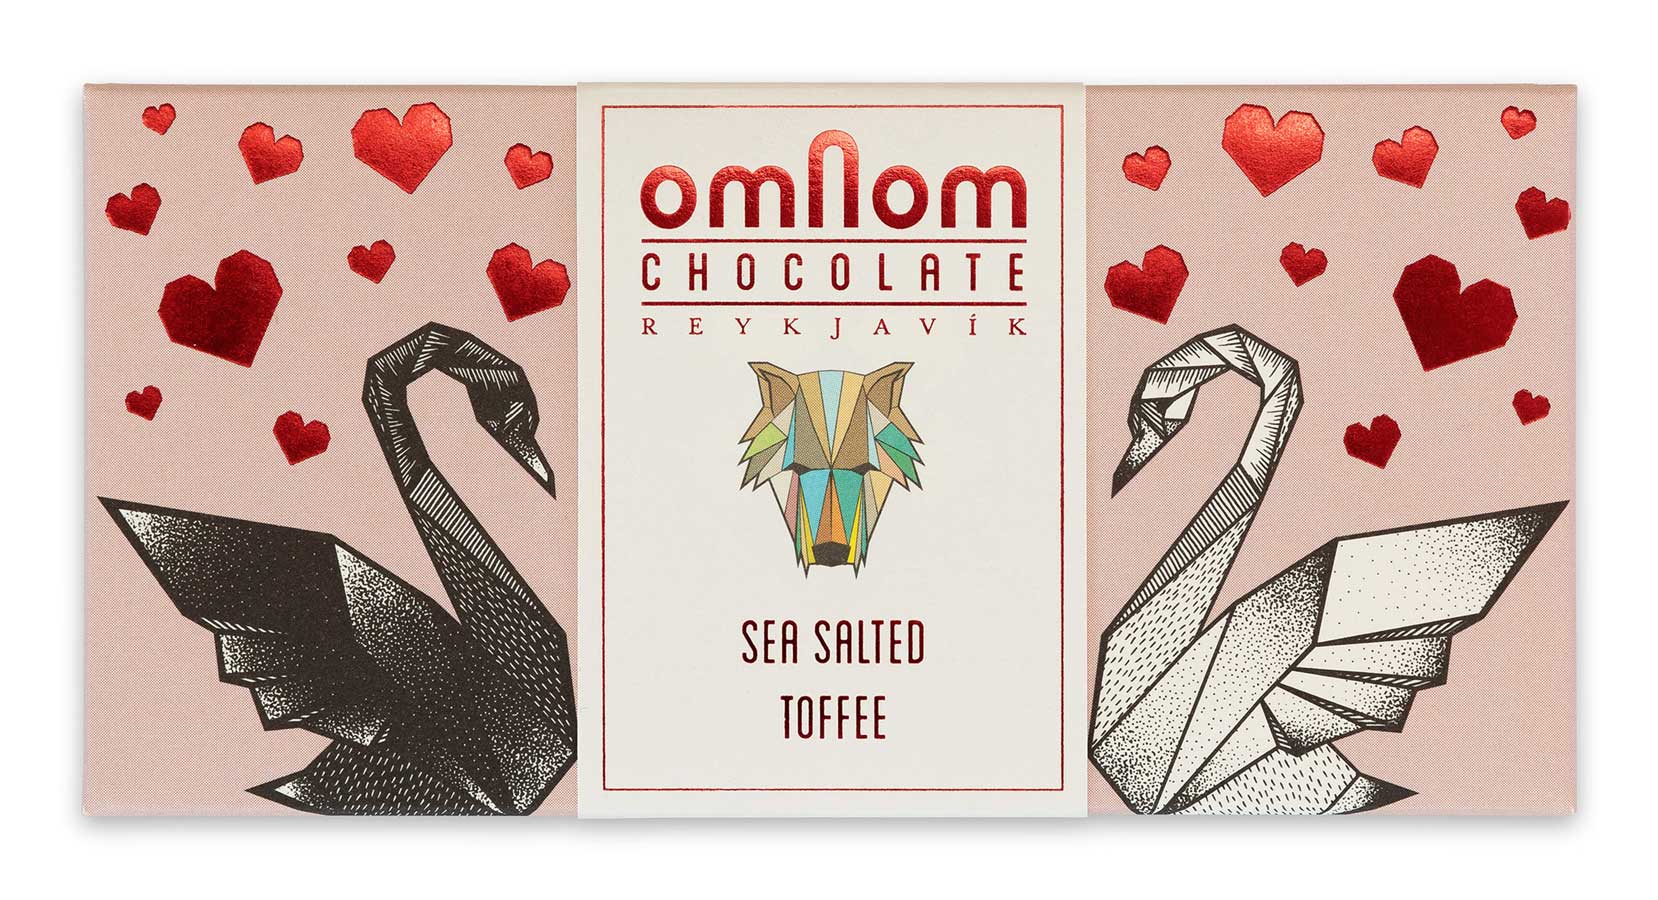 Verpackung der gesalzenen Toffee-Schokolade von Omnom in rosa mit schwarzem und weissem Schwan und roten Herzen